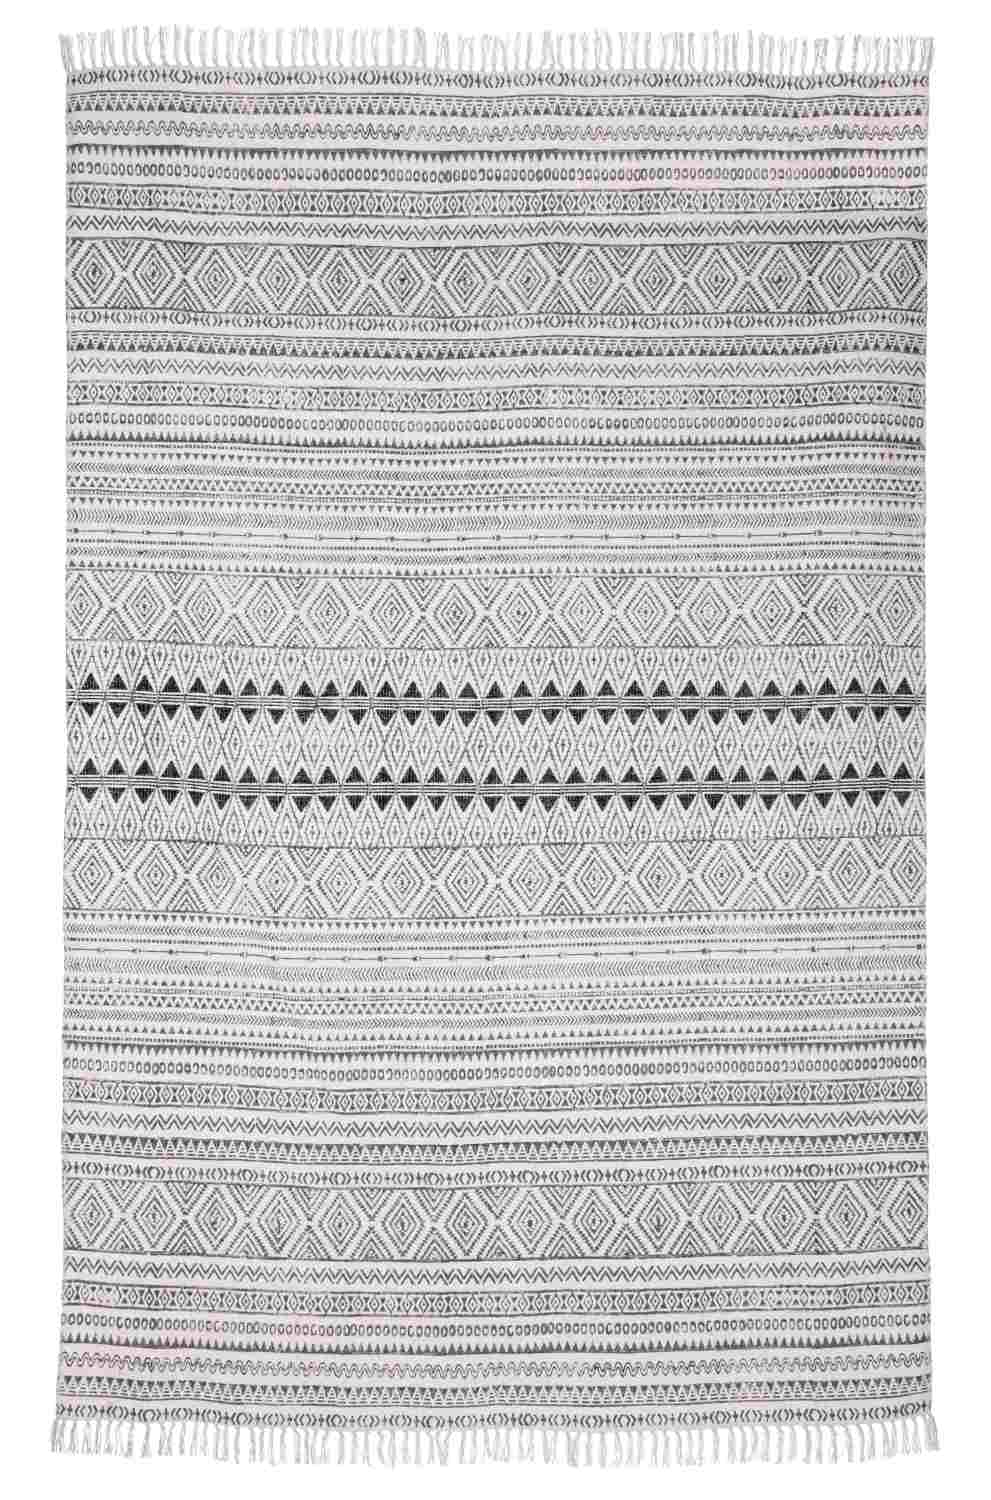 Der Teppich Giordania überzeugt mit seinem klassischen Design. Gefertigt wurde die Vorderseite aus 100% Baumwolle. Der Teppich besitzt einen grauen Farbton und die Maße von 160x230 cm.